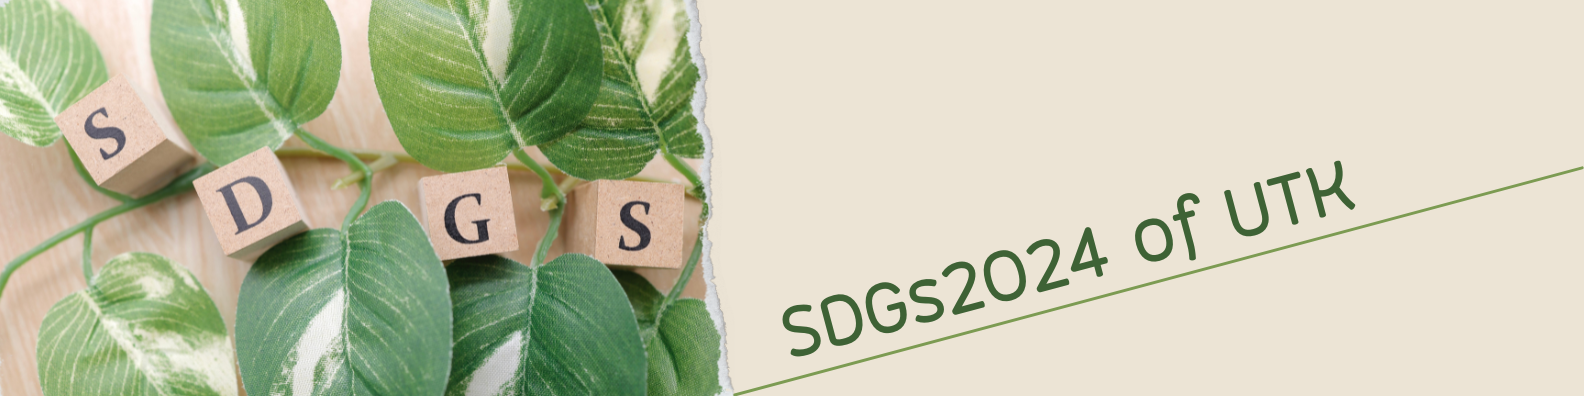 โครงการ SDGs2024 of UTK